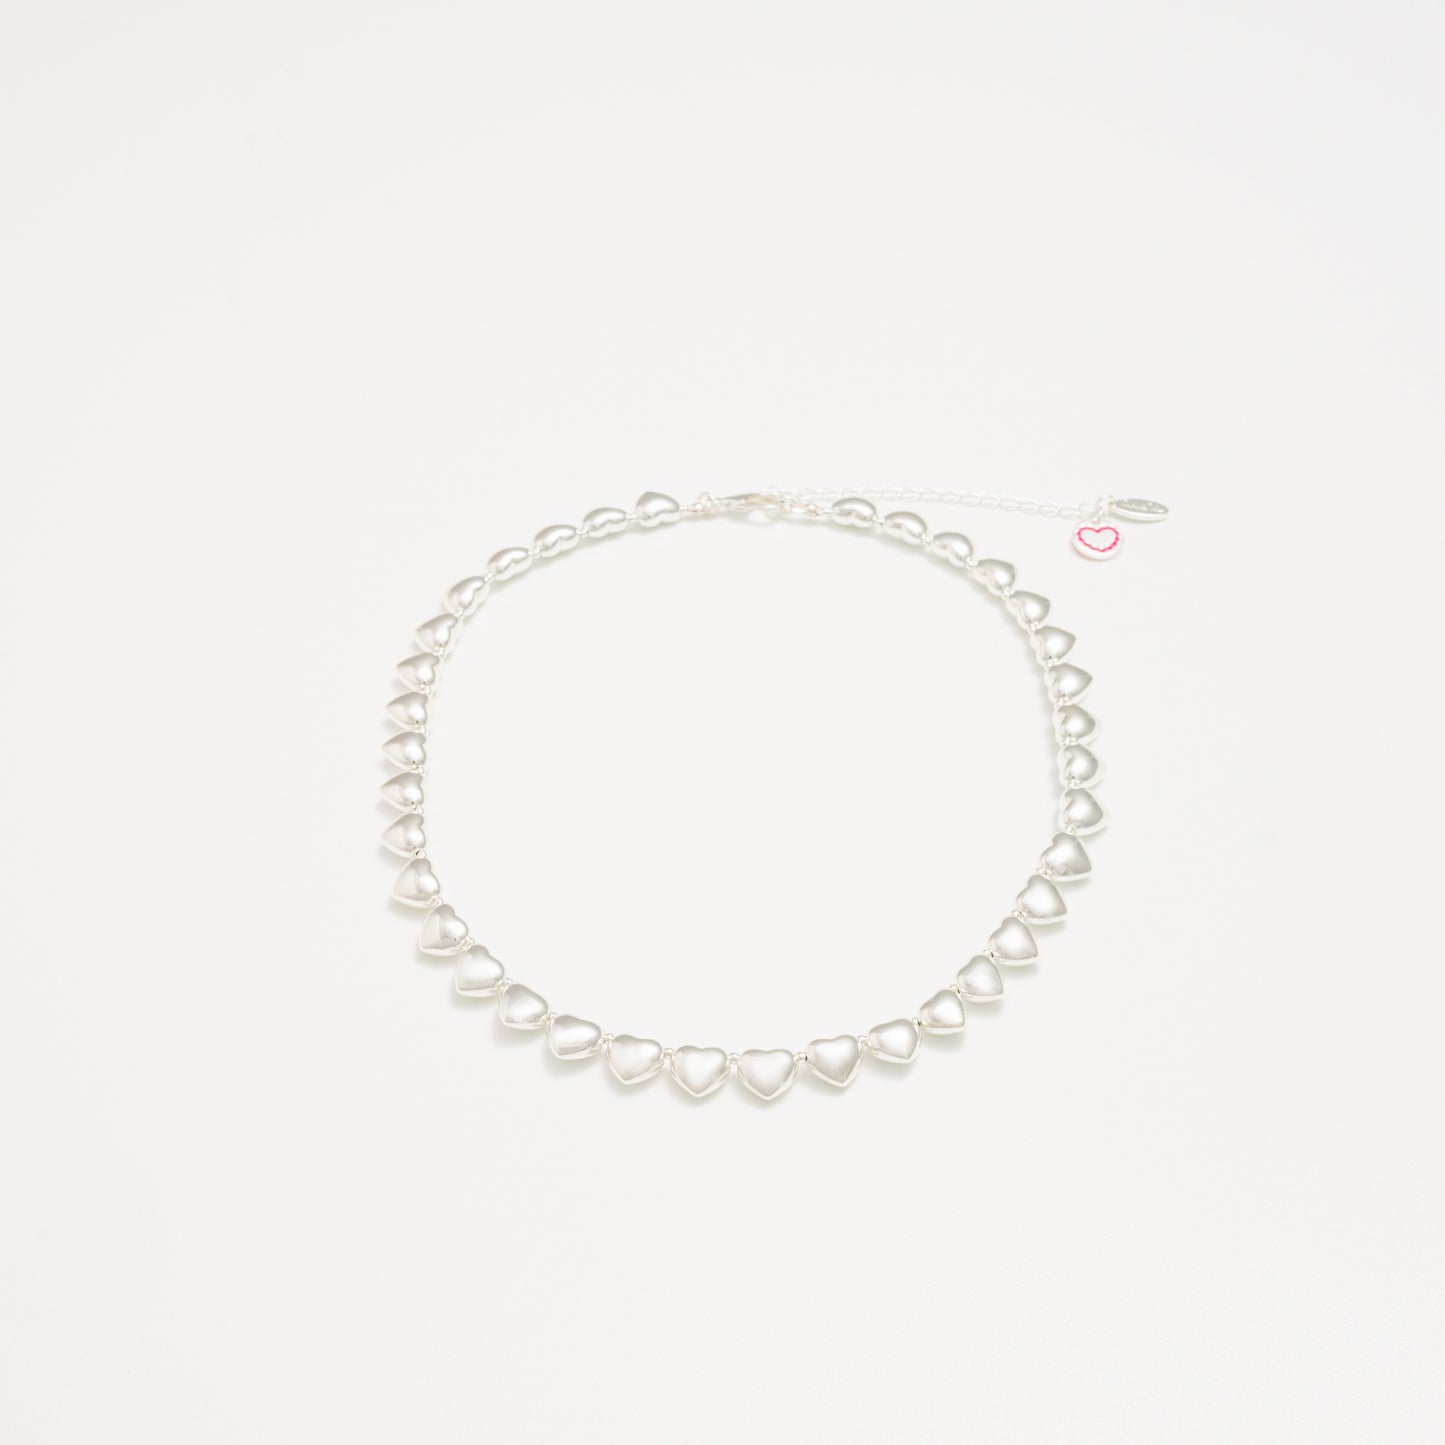 Heartbreaker Necklace - Silver